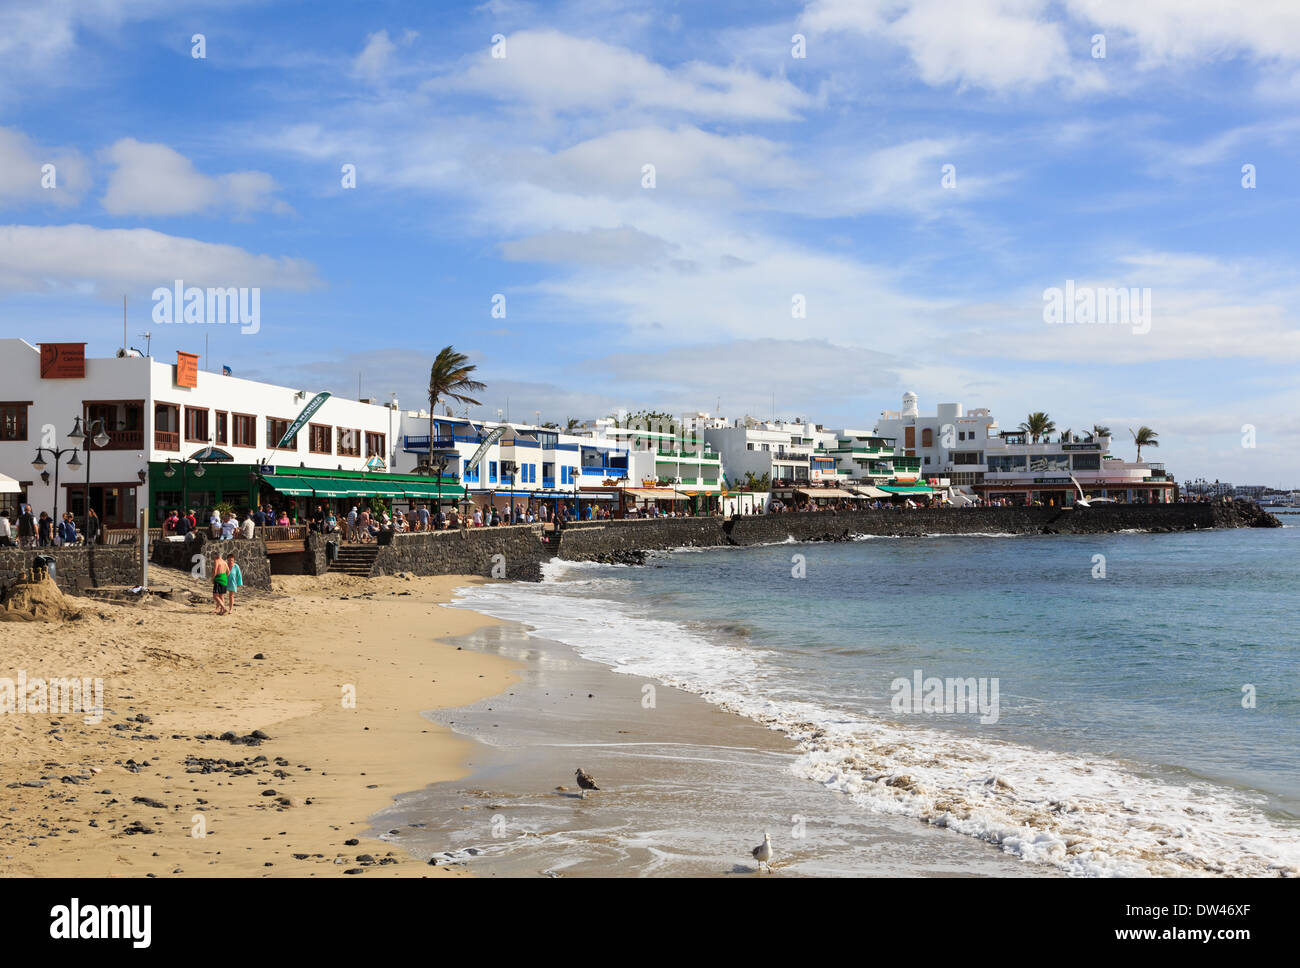 Kleiner Sandstrand und Meer promenade mit Restaurants in Playa Blanca, Lanzarote, Kanarische Inseln, Spanien Stockfoto